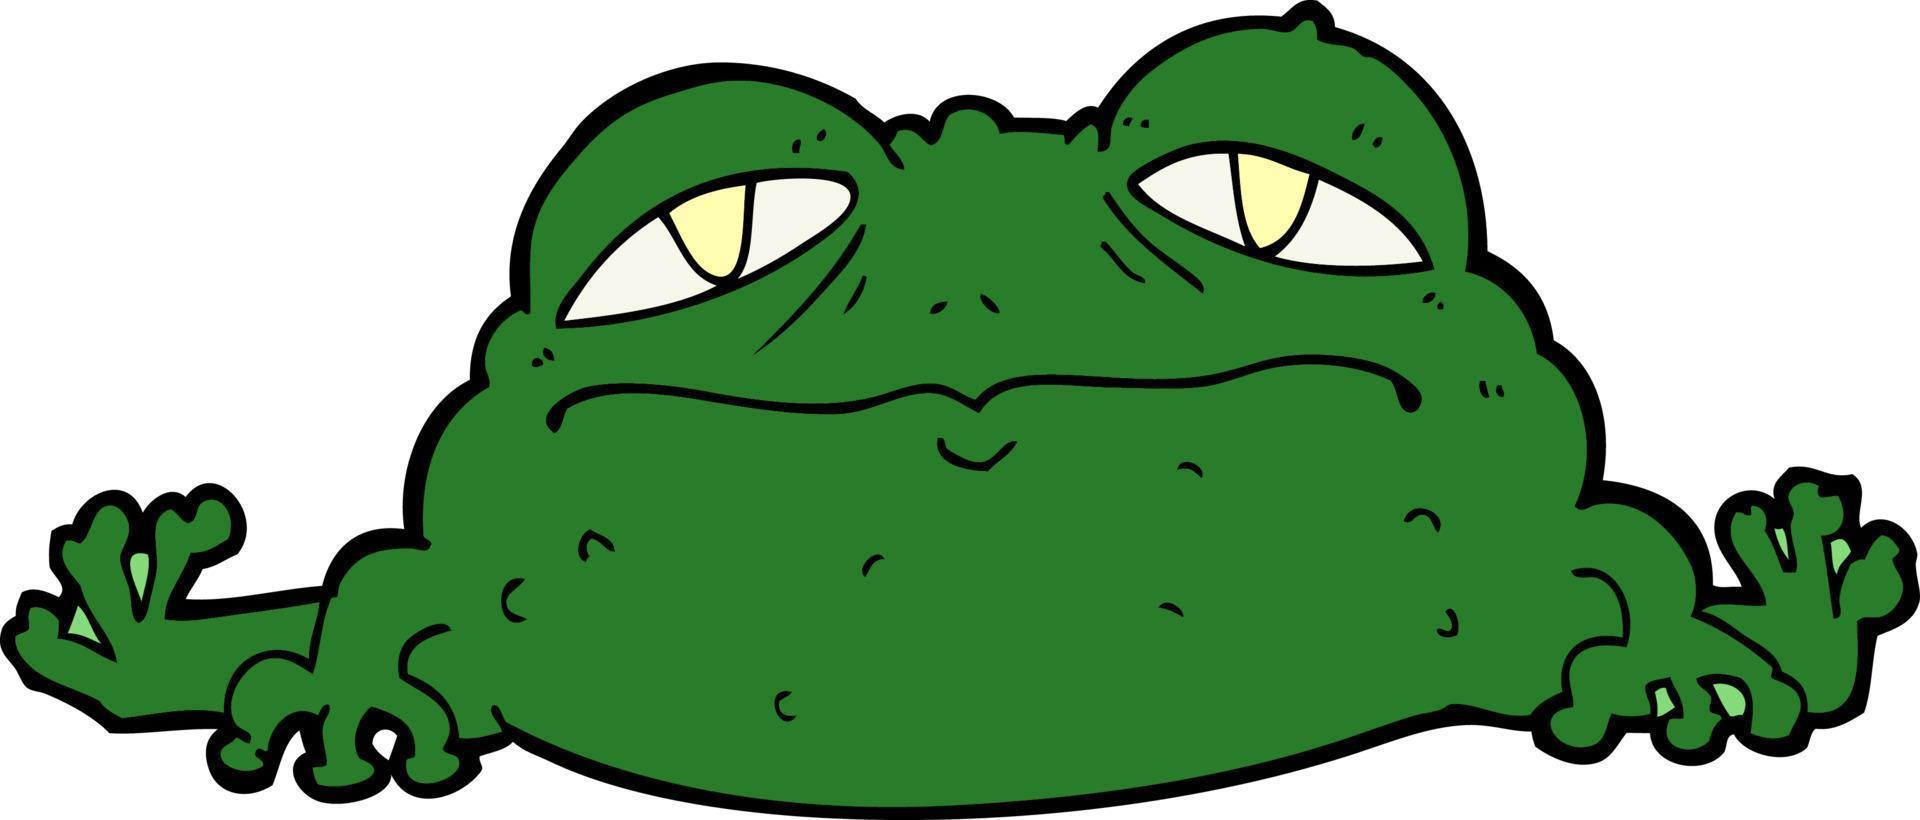 Ugly frog cartoon